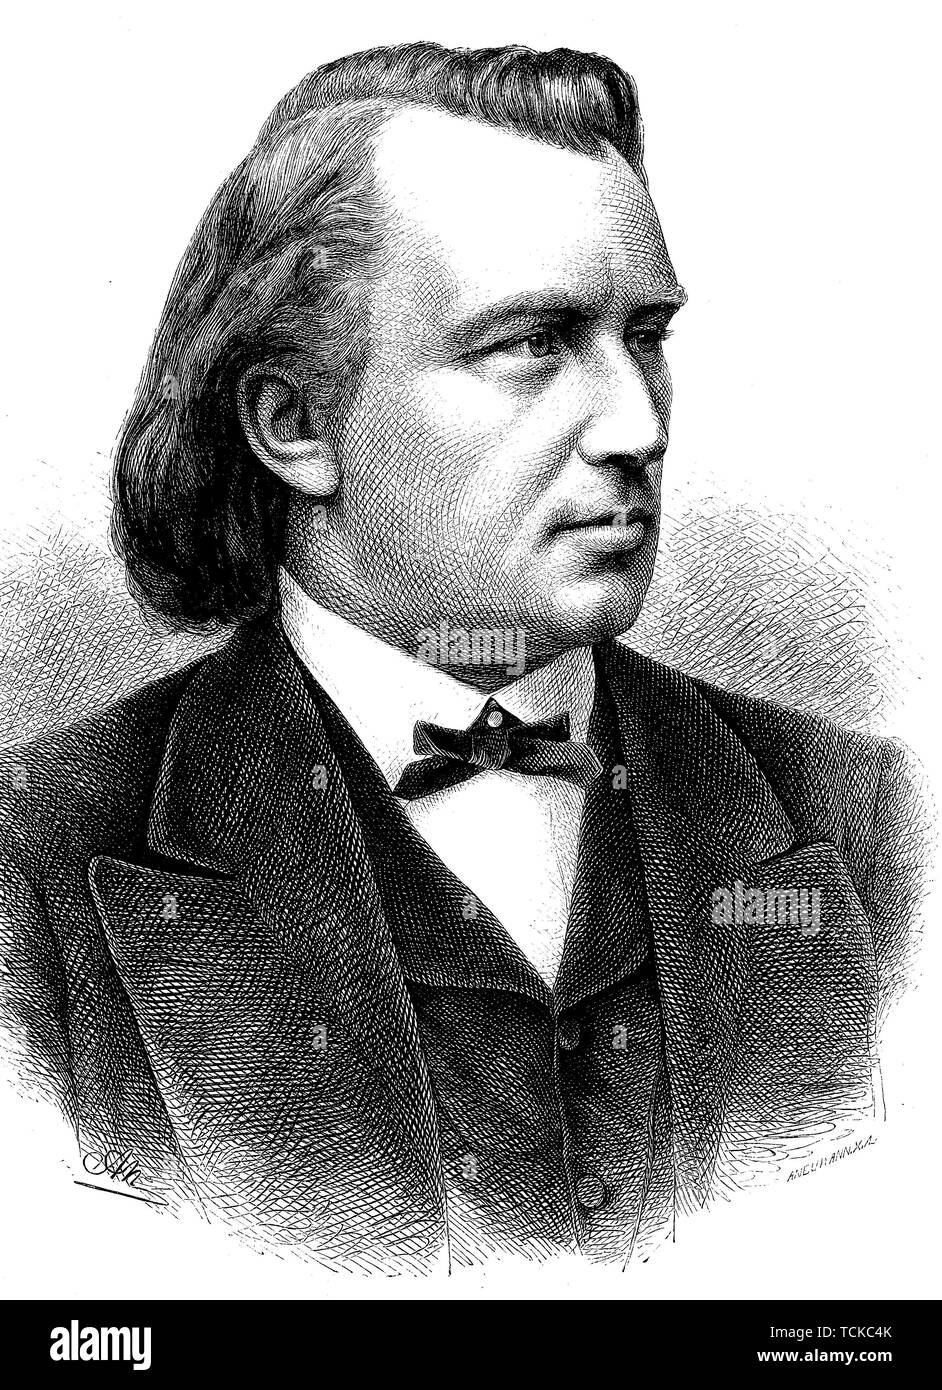 Johannes Brahms, 1833-1897, compositeur et pianiste allemand de la période romantique, 1880, gravure sur bois historique, Allemagne Banque D'Images